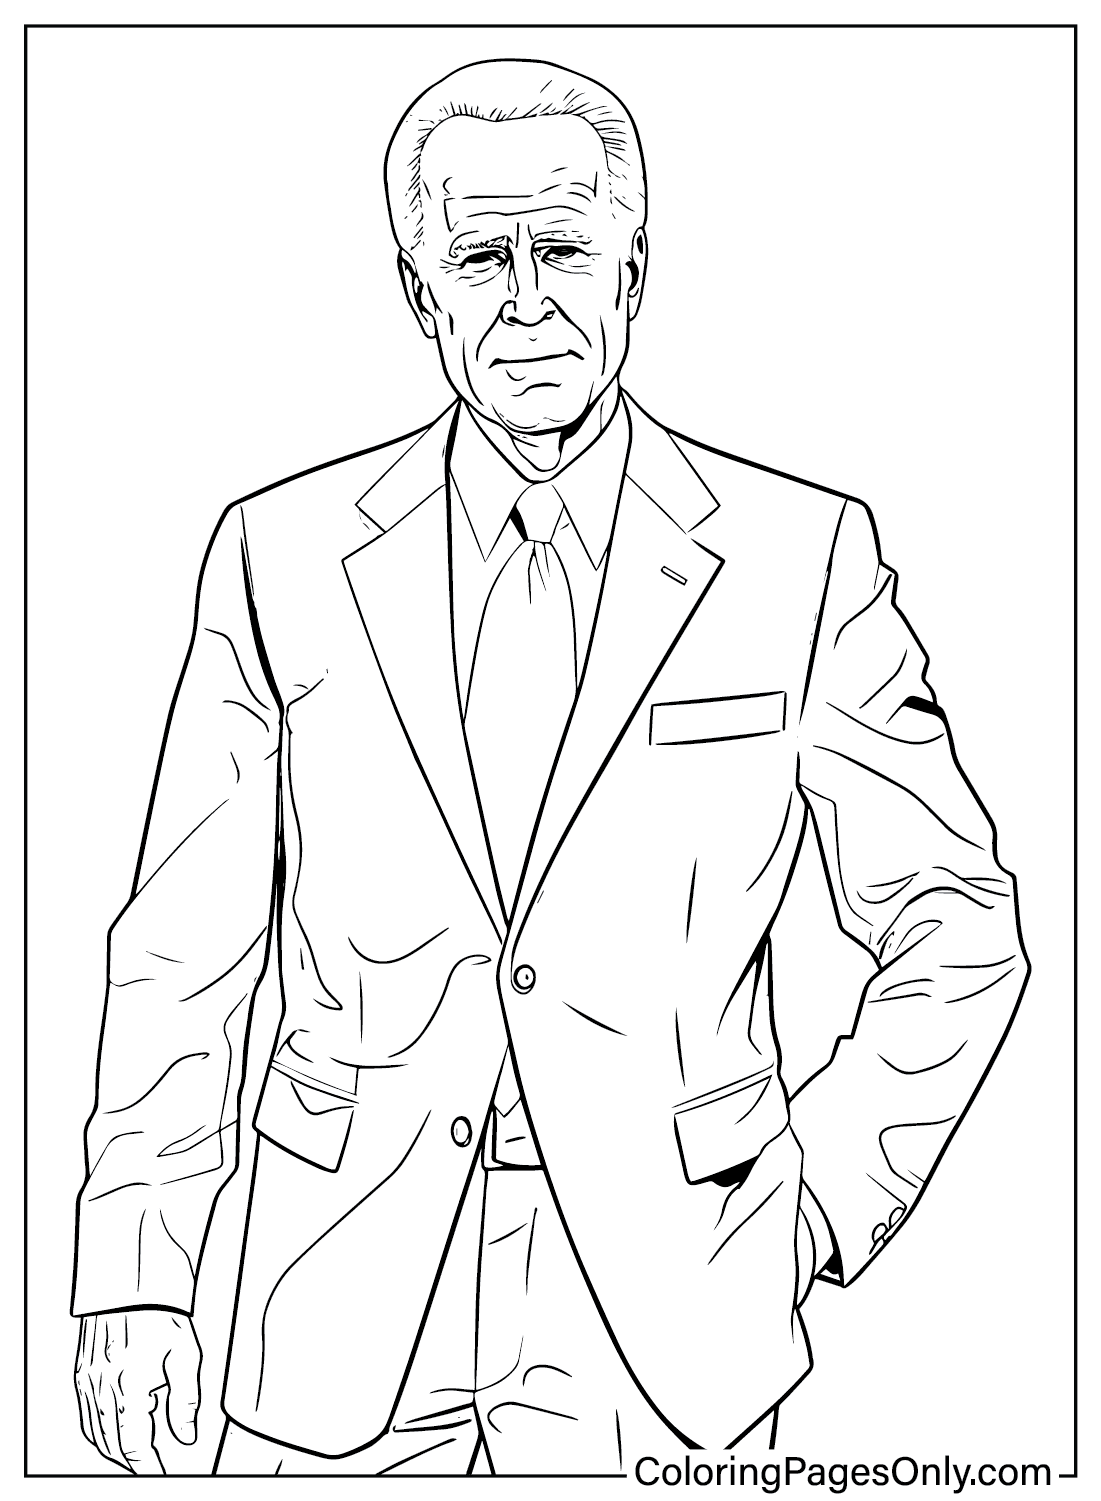 Página para colorear de Joe Biden para imprimir gratis de Joe Biden